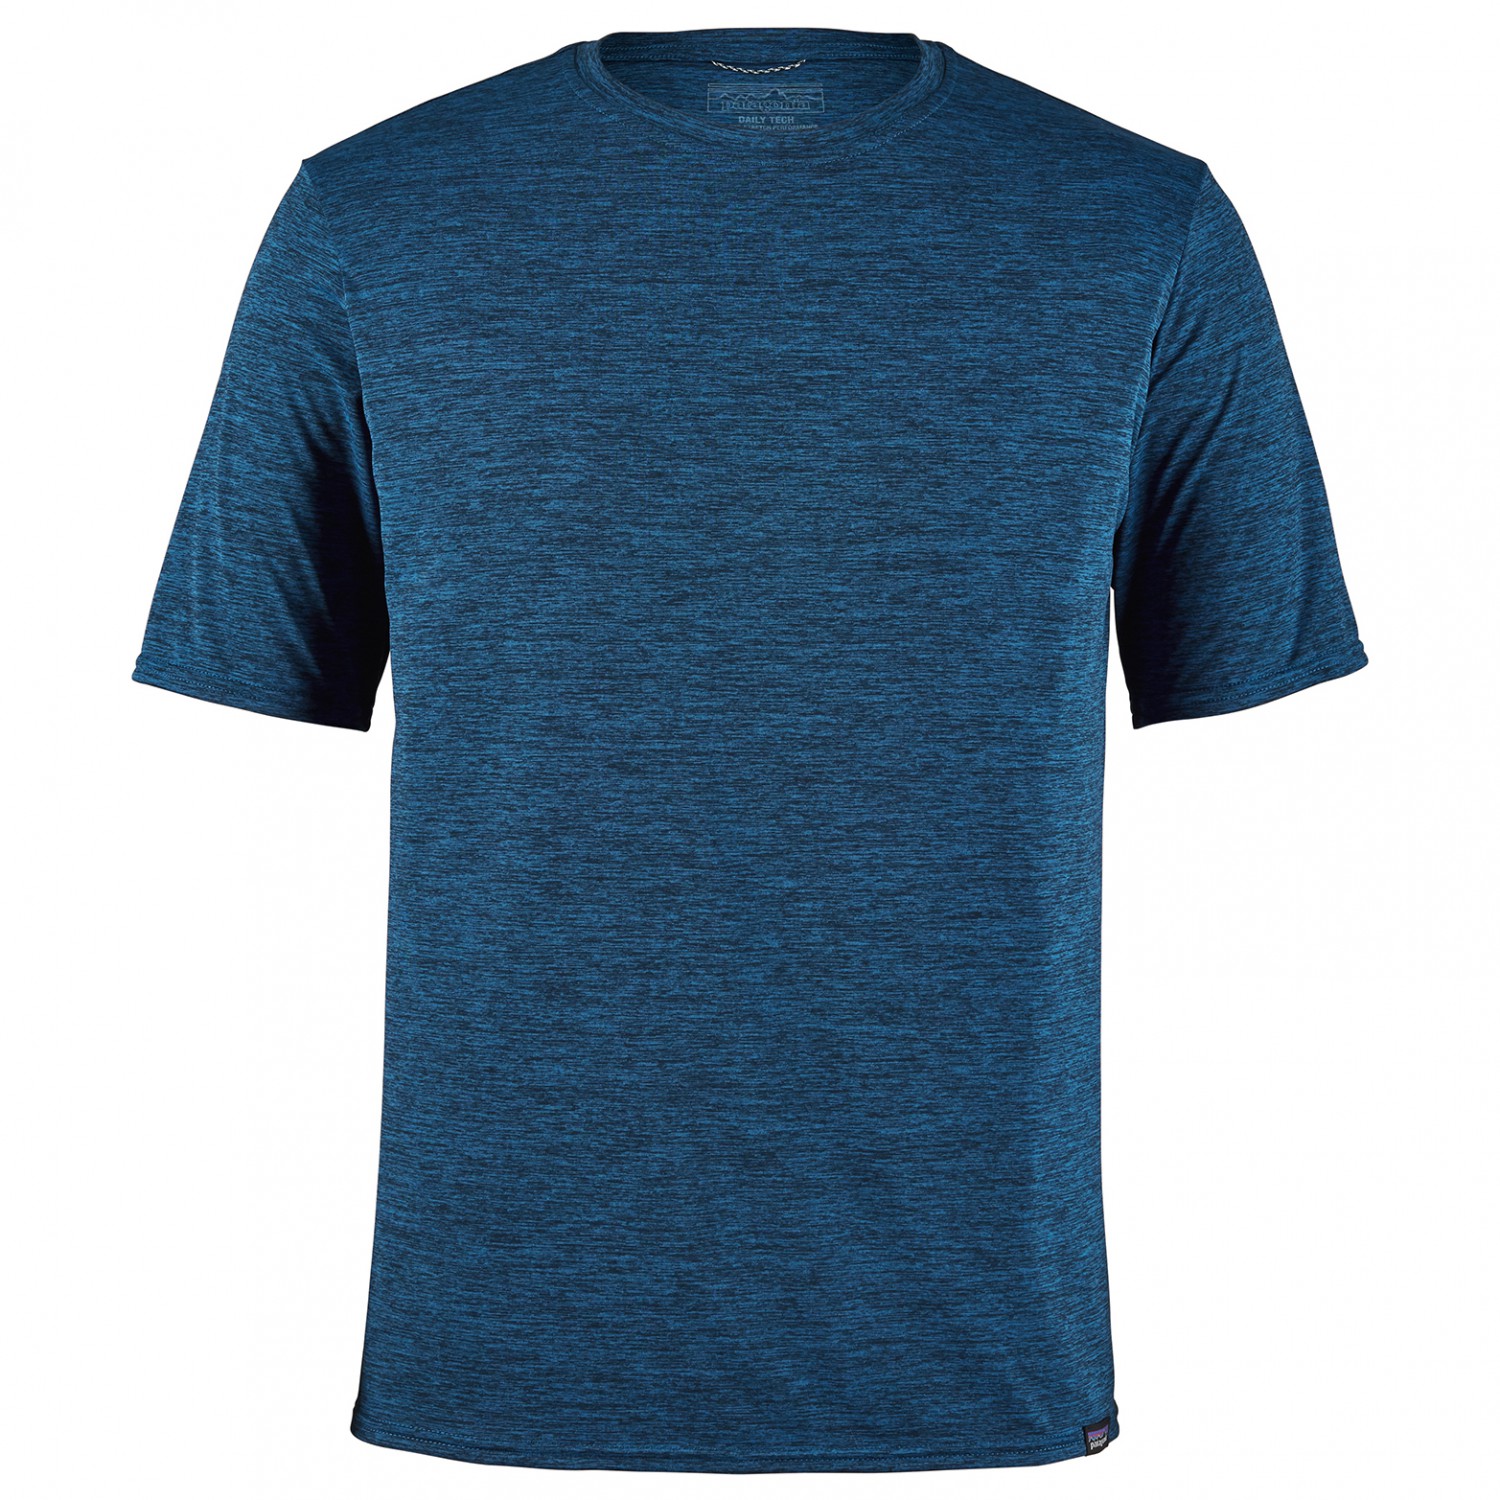 Функциональная рубашка Patagonia Cap Cool Daily Shirt, цвет Viking Blue/Navy Blue X Dye